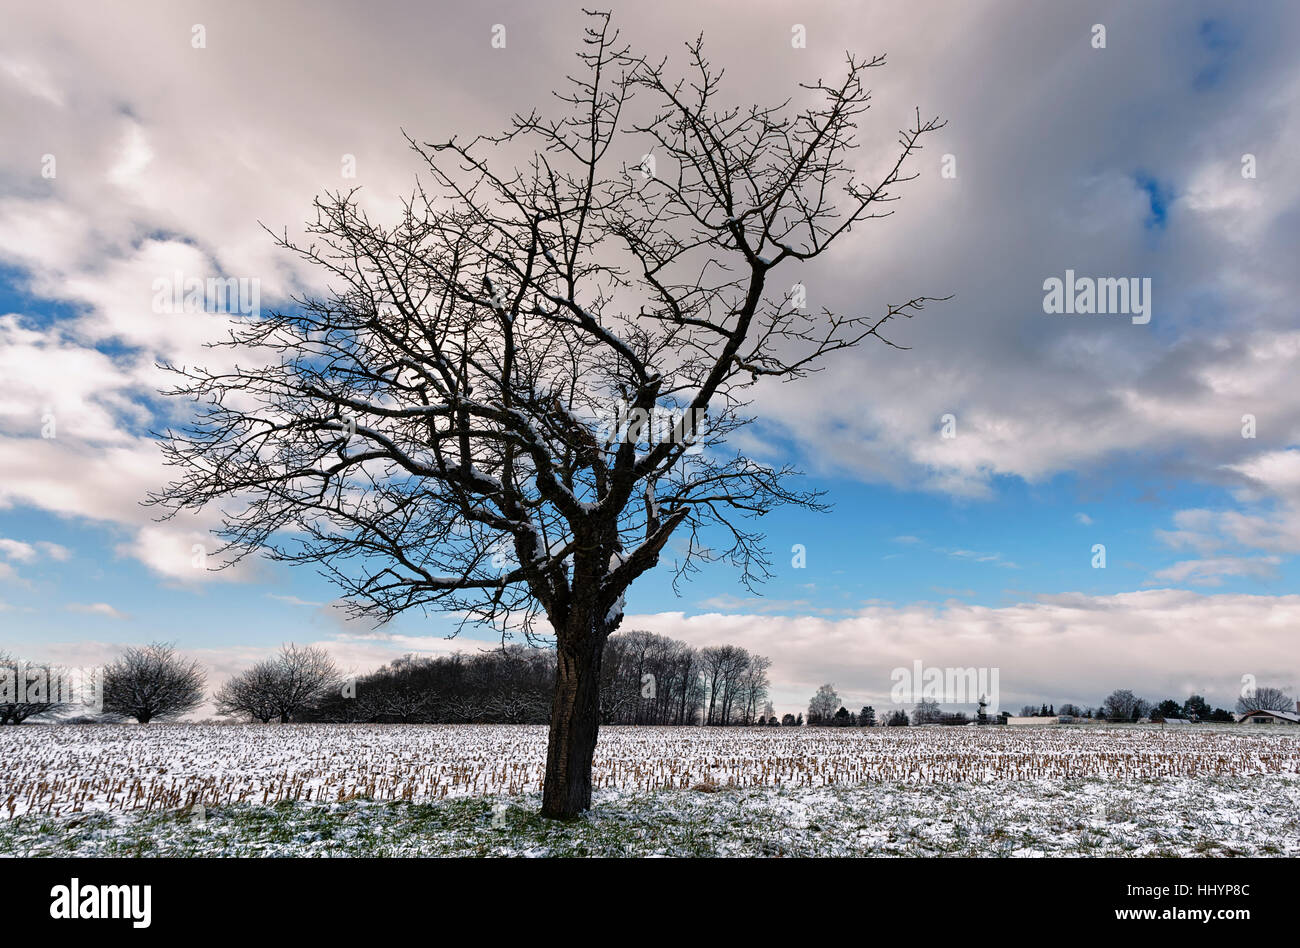 winter, switzerland, winter, switzerland, clouds, weather, sss kirsche, prunus Stock Photo